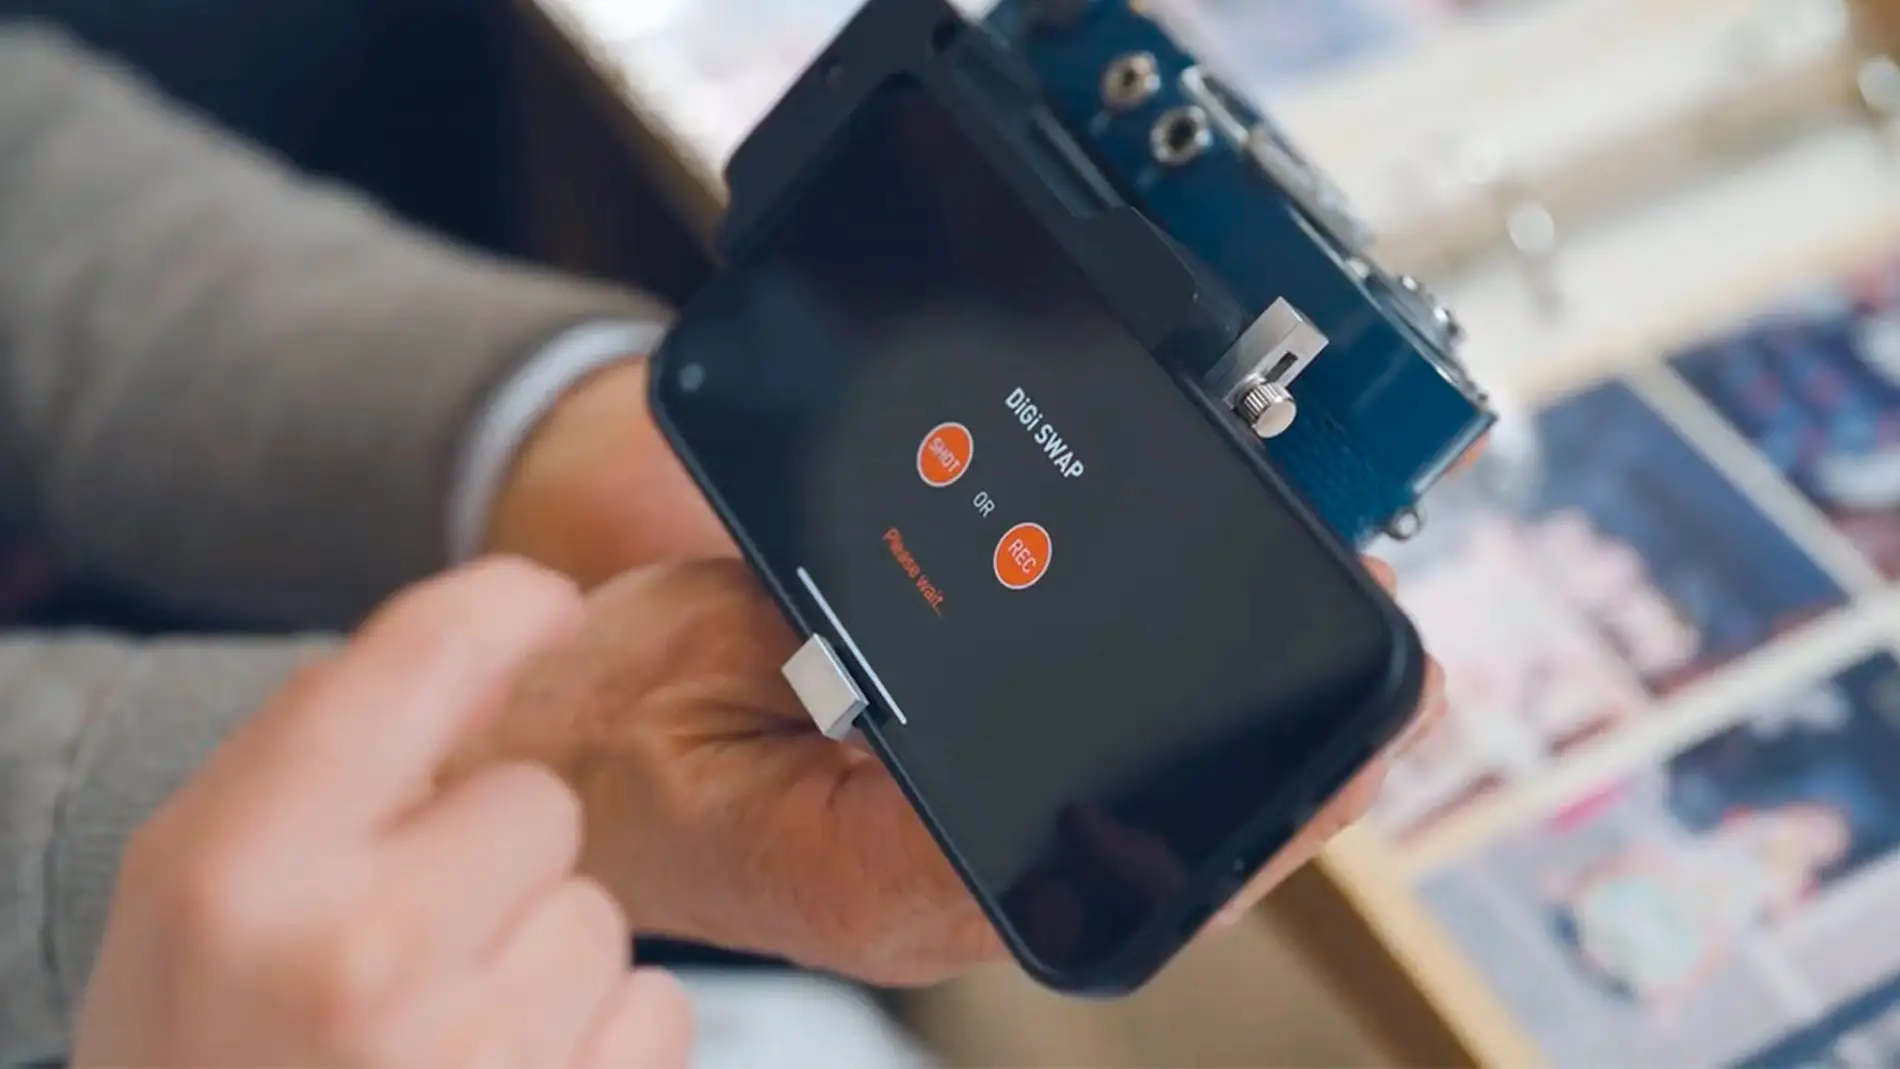 Con este accesorio tu iPhone convierte cualquier cámara analógica en digital